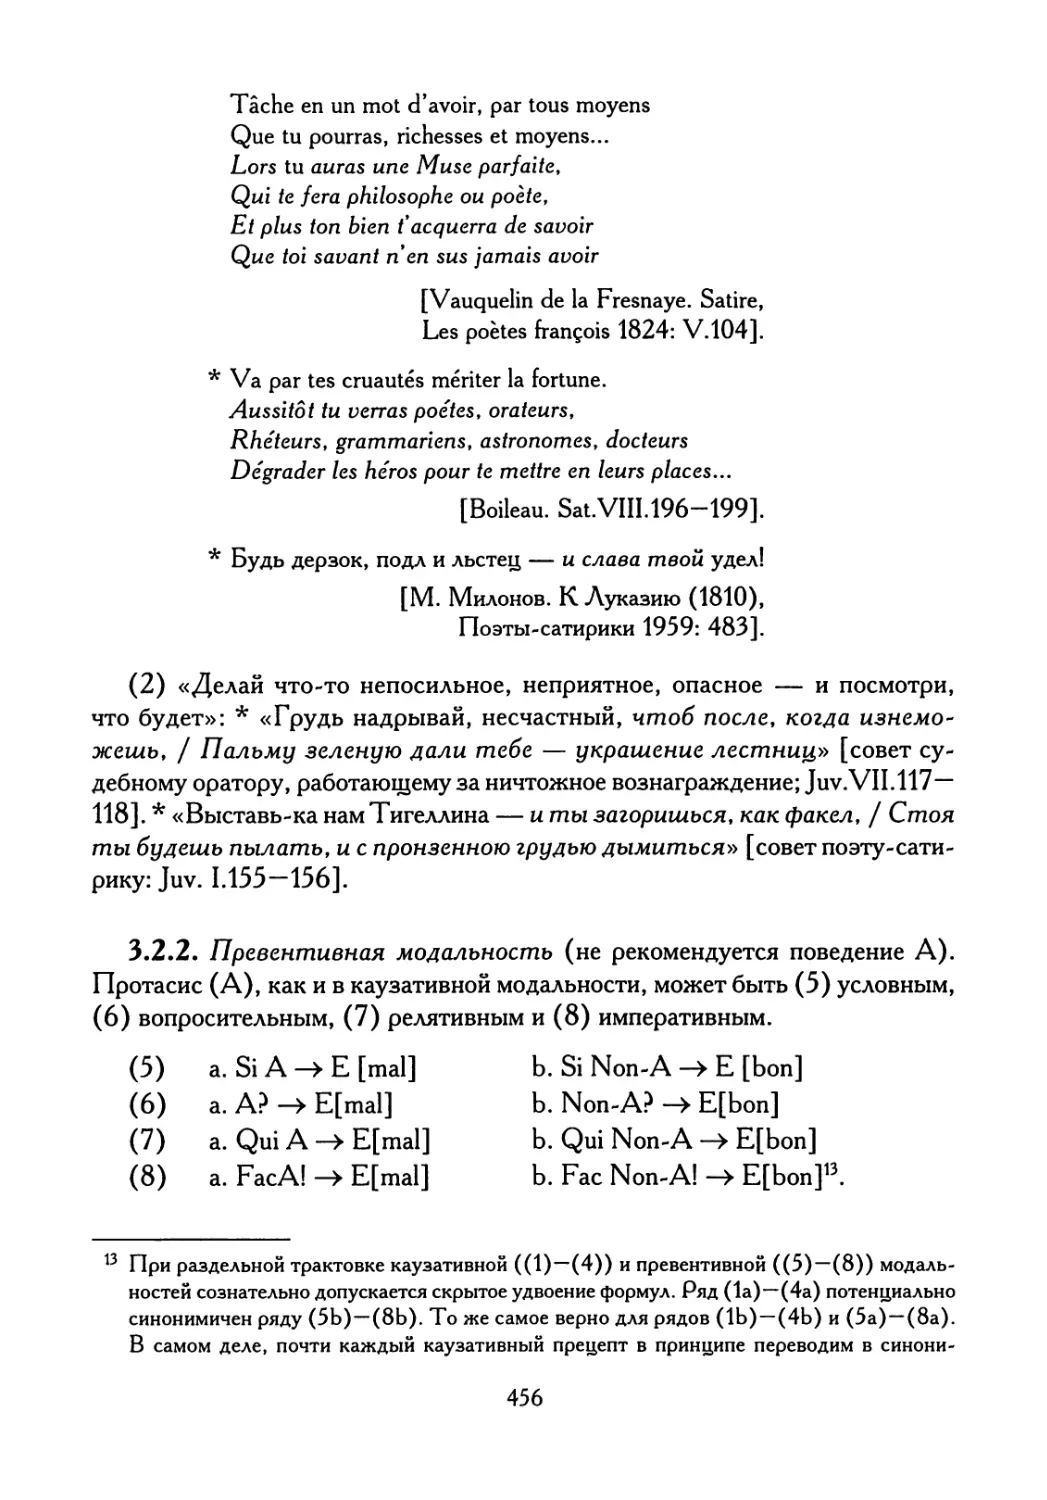 3.2.2. Превентивная модальность (не рекомендуется поведение А). Формулы (5) — (8)